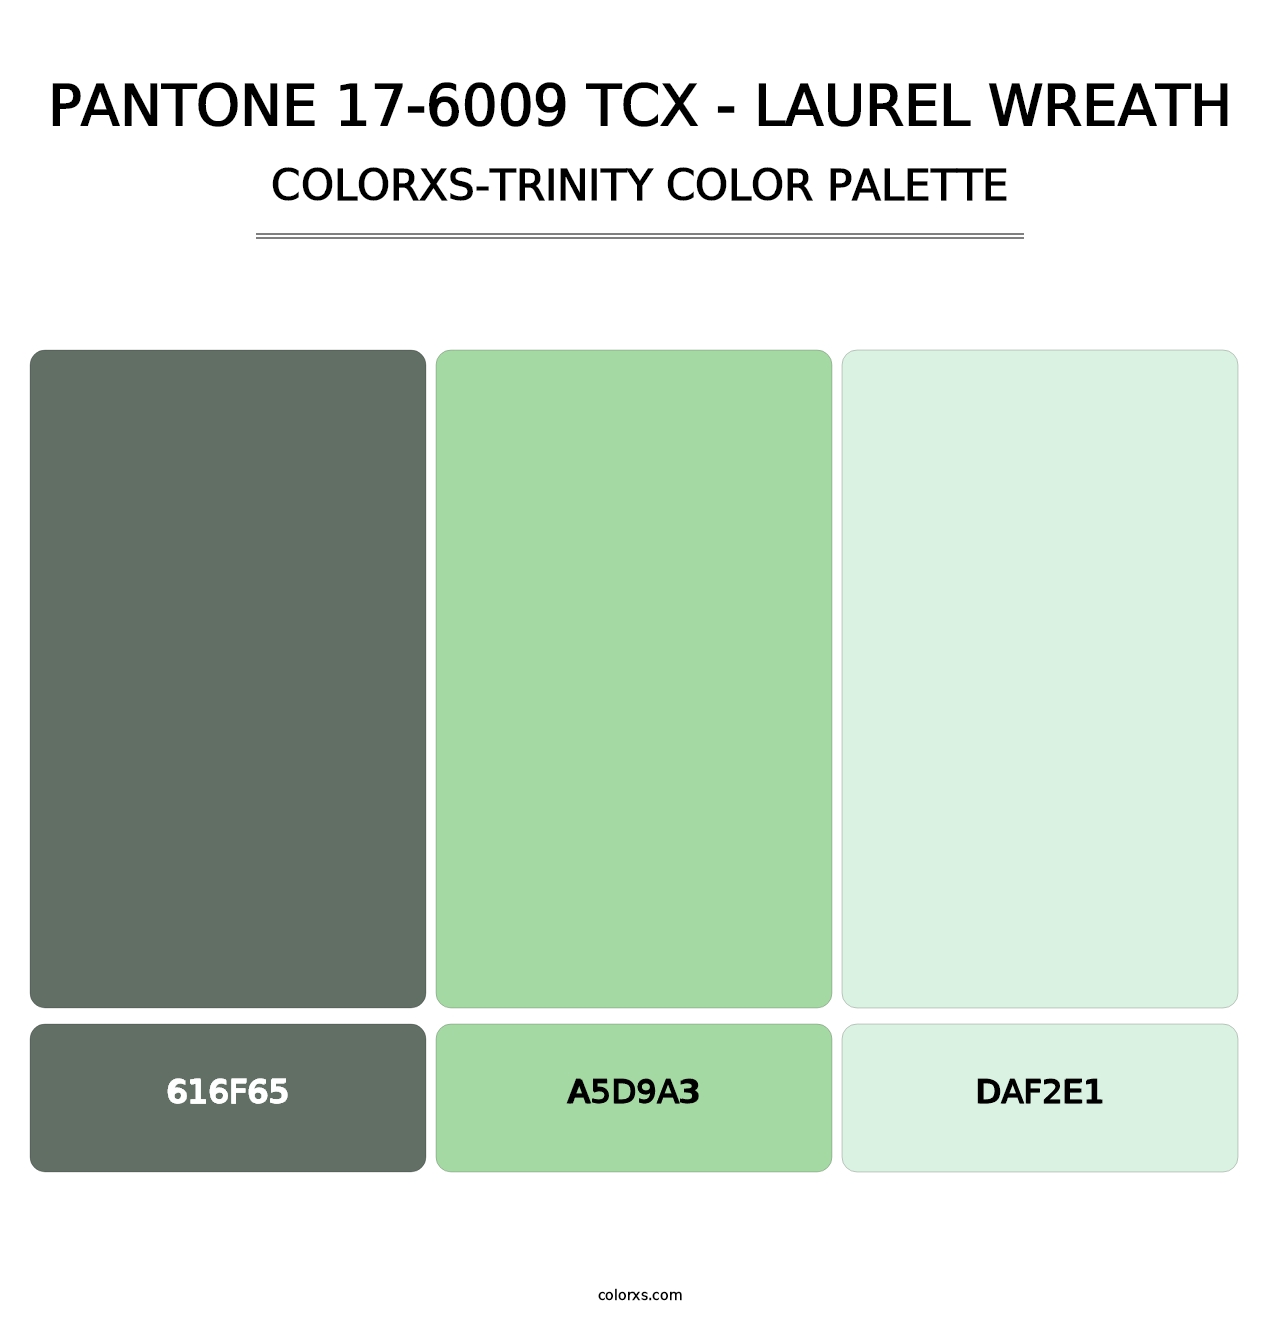 PANTONE 17-6009 TCX - Laurel Wreath - Colorxs Trinity Palette